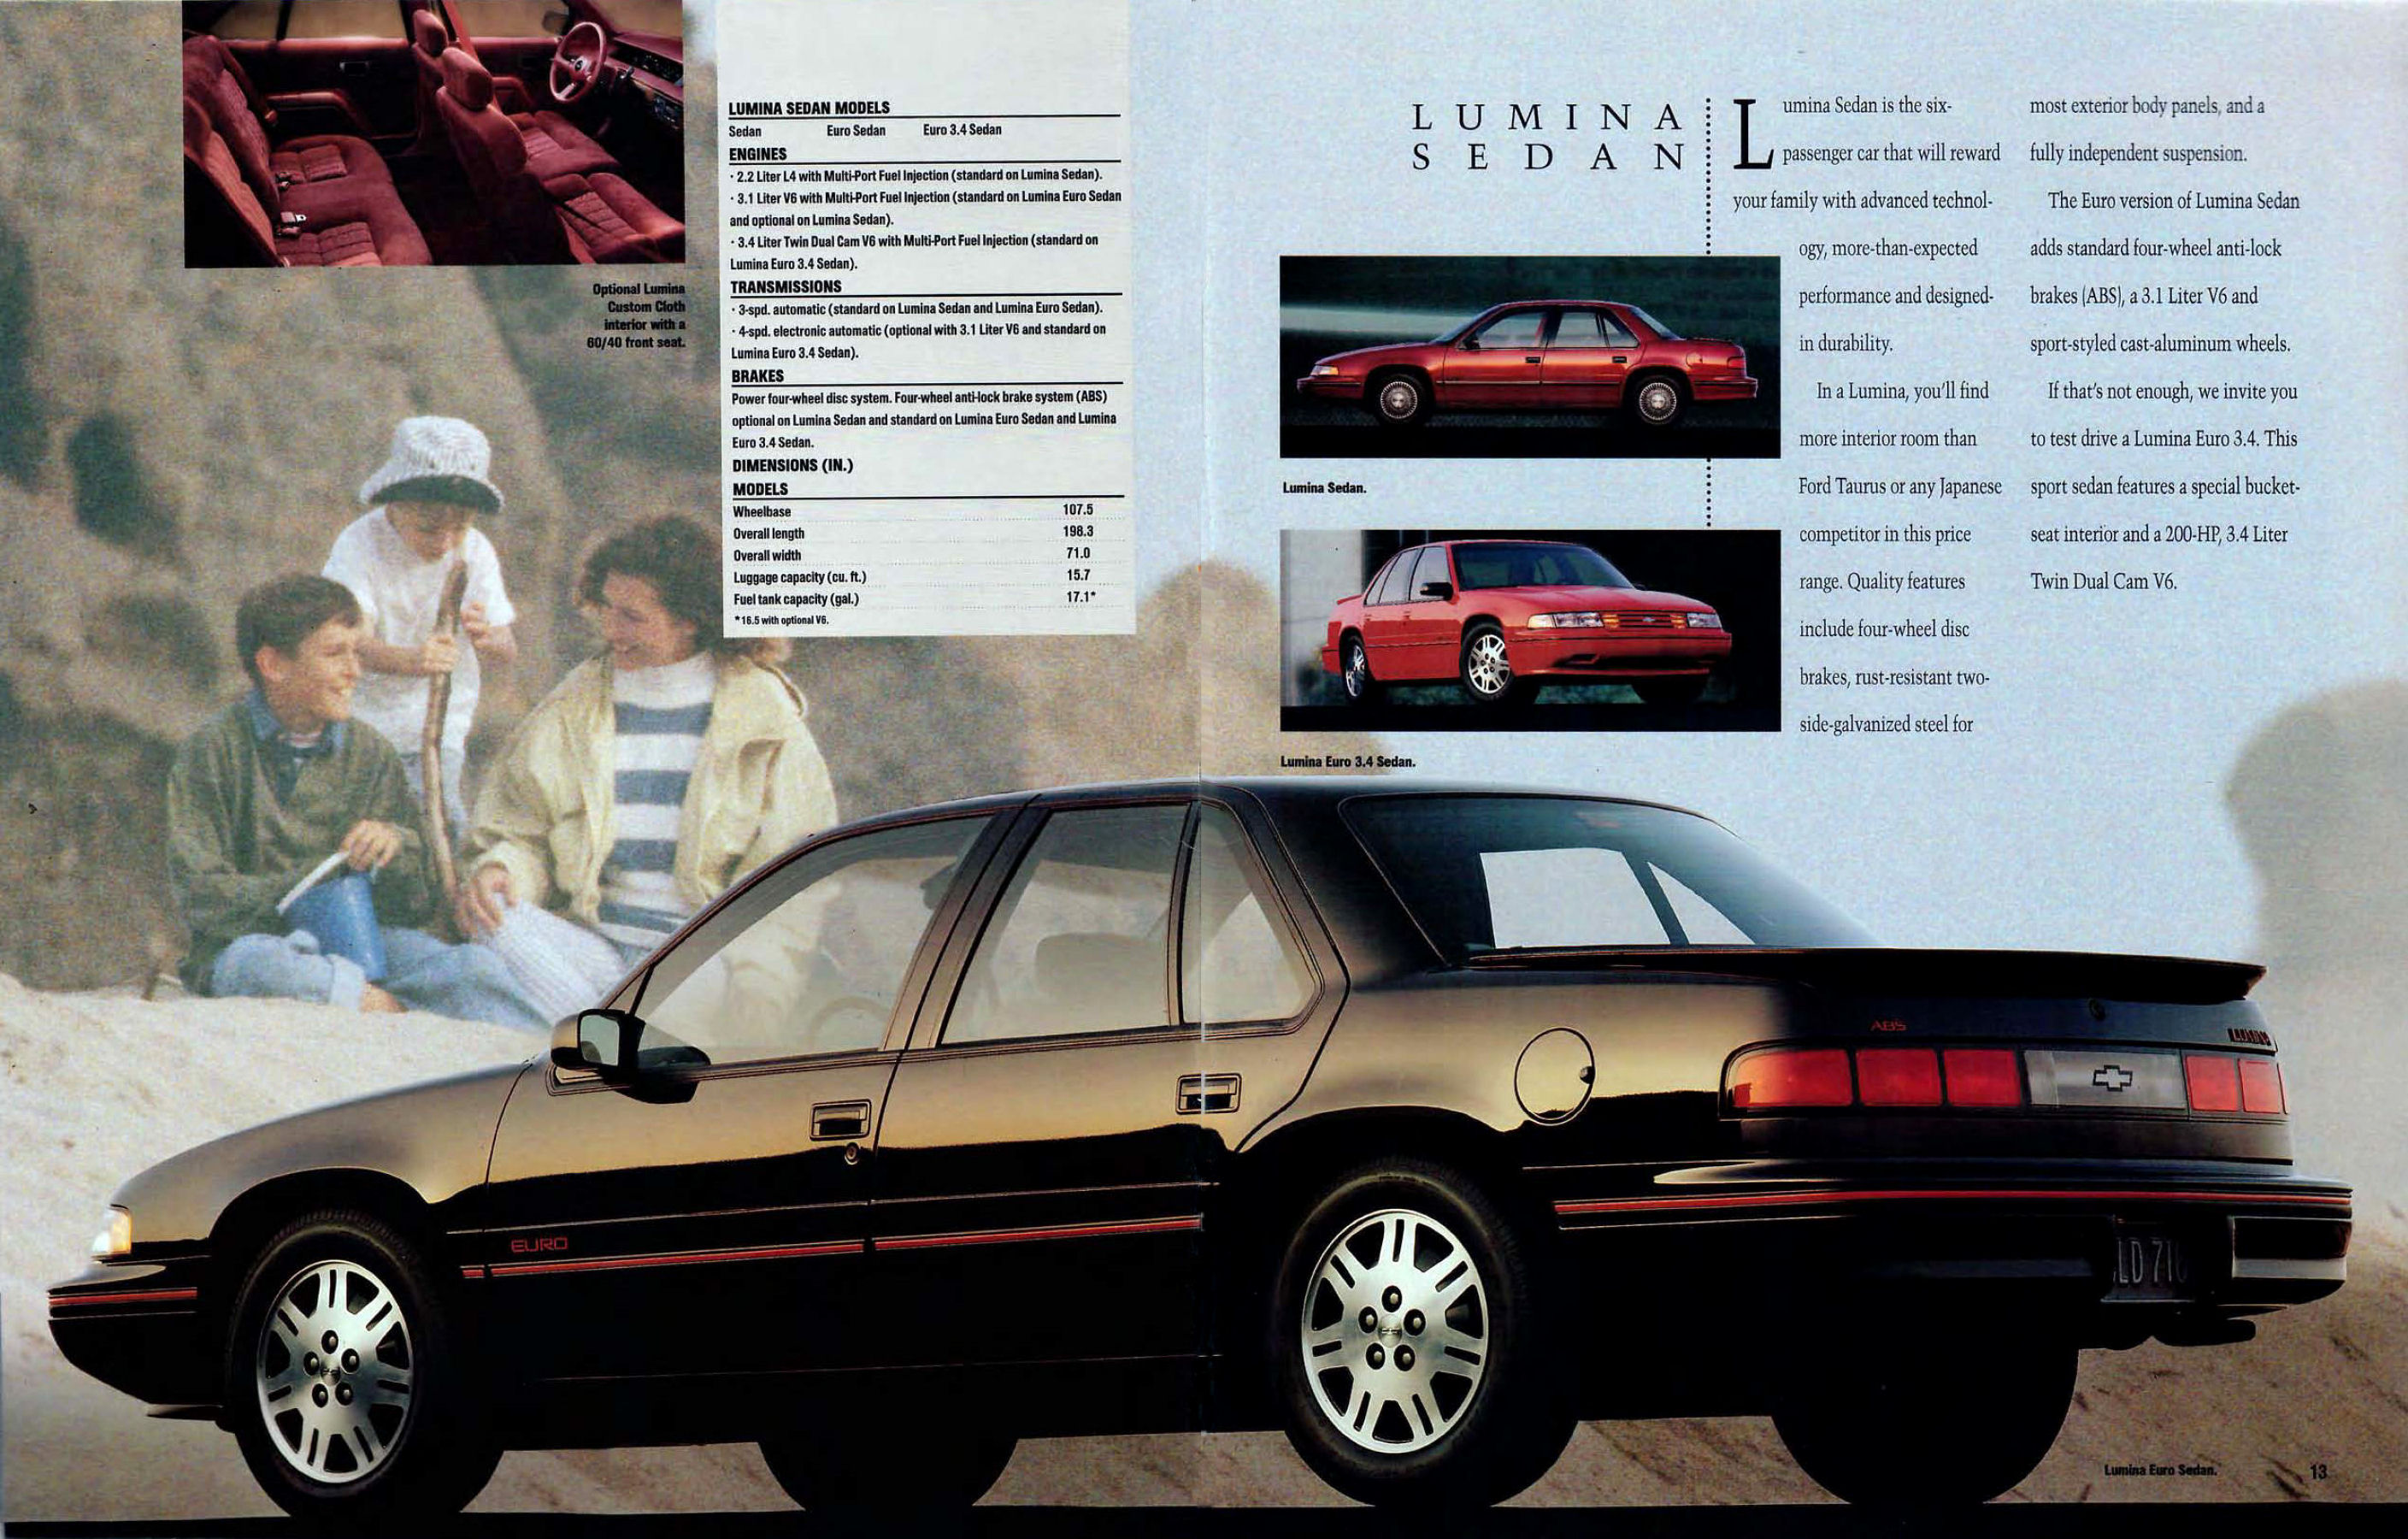 1993 Chevrolet Full Line-12-13